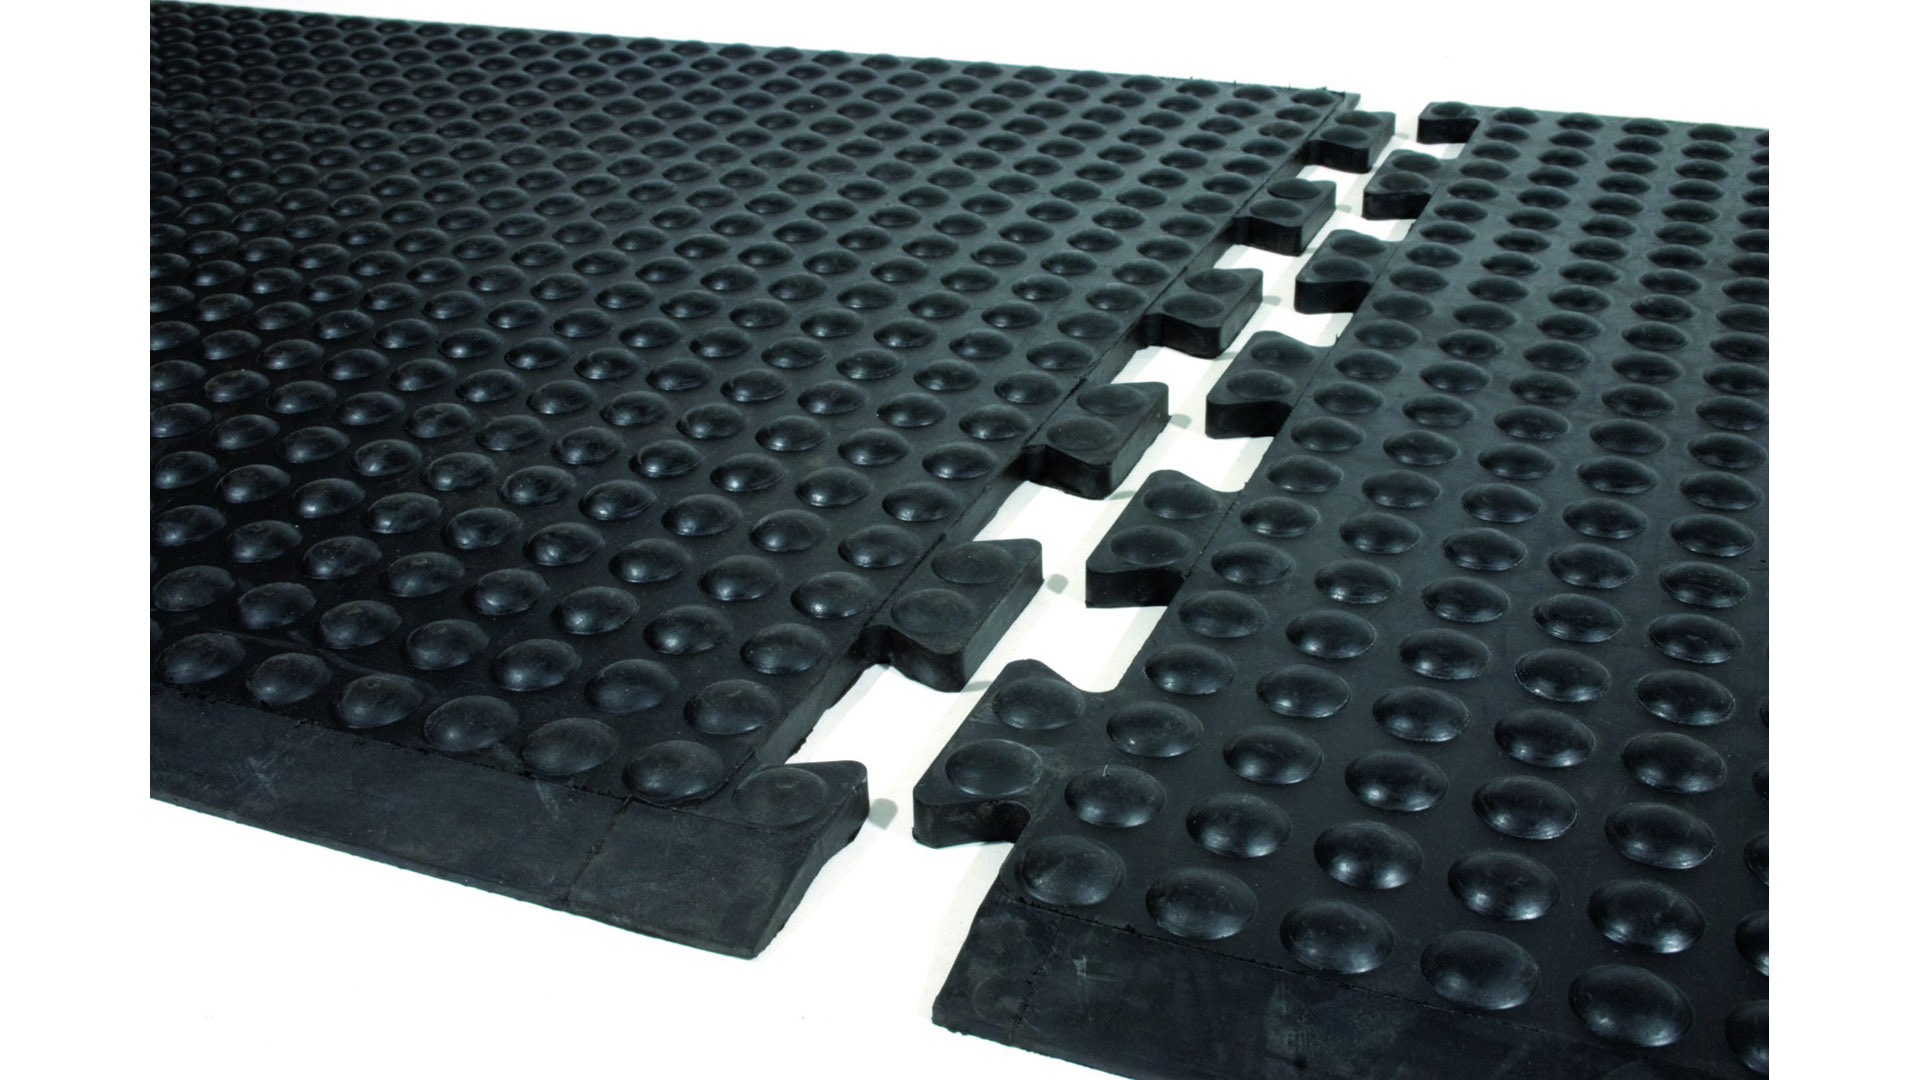 Arbeitsplatzmatte, Gummi, schwarz, mit rundum abgeschrägten Kanten, LxBxH 1200x900x14 mm, Gewicht 10,5 kg